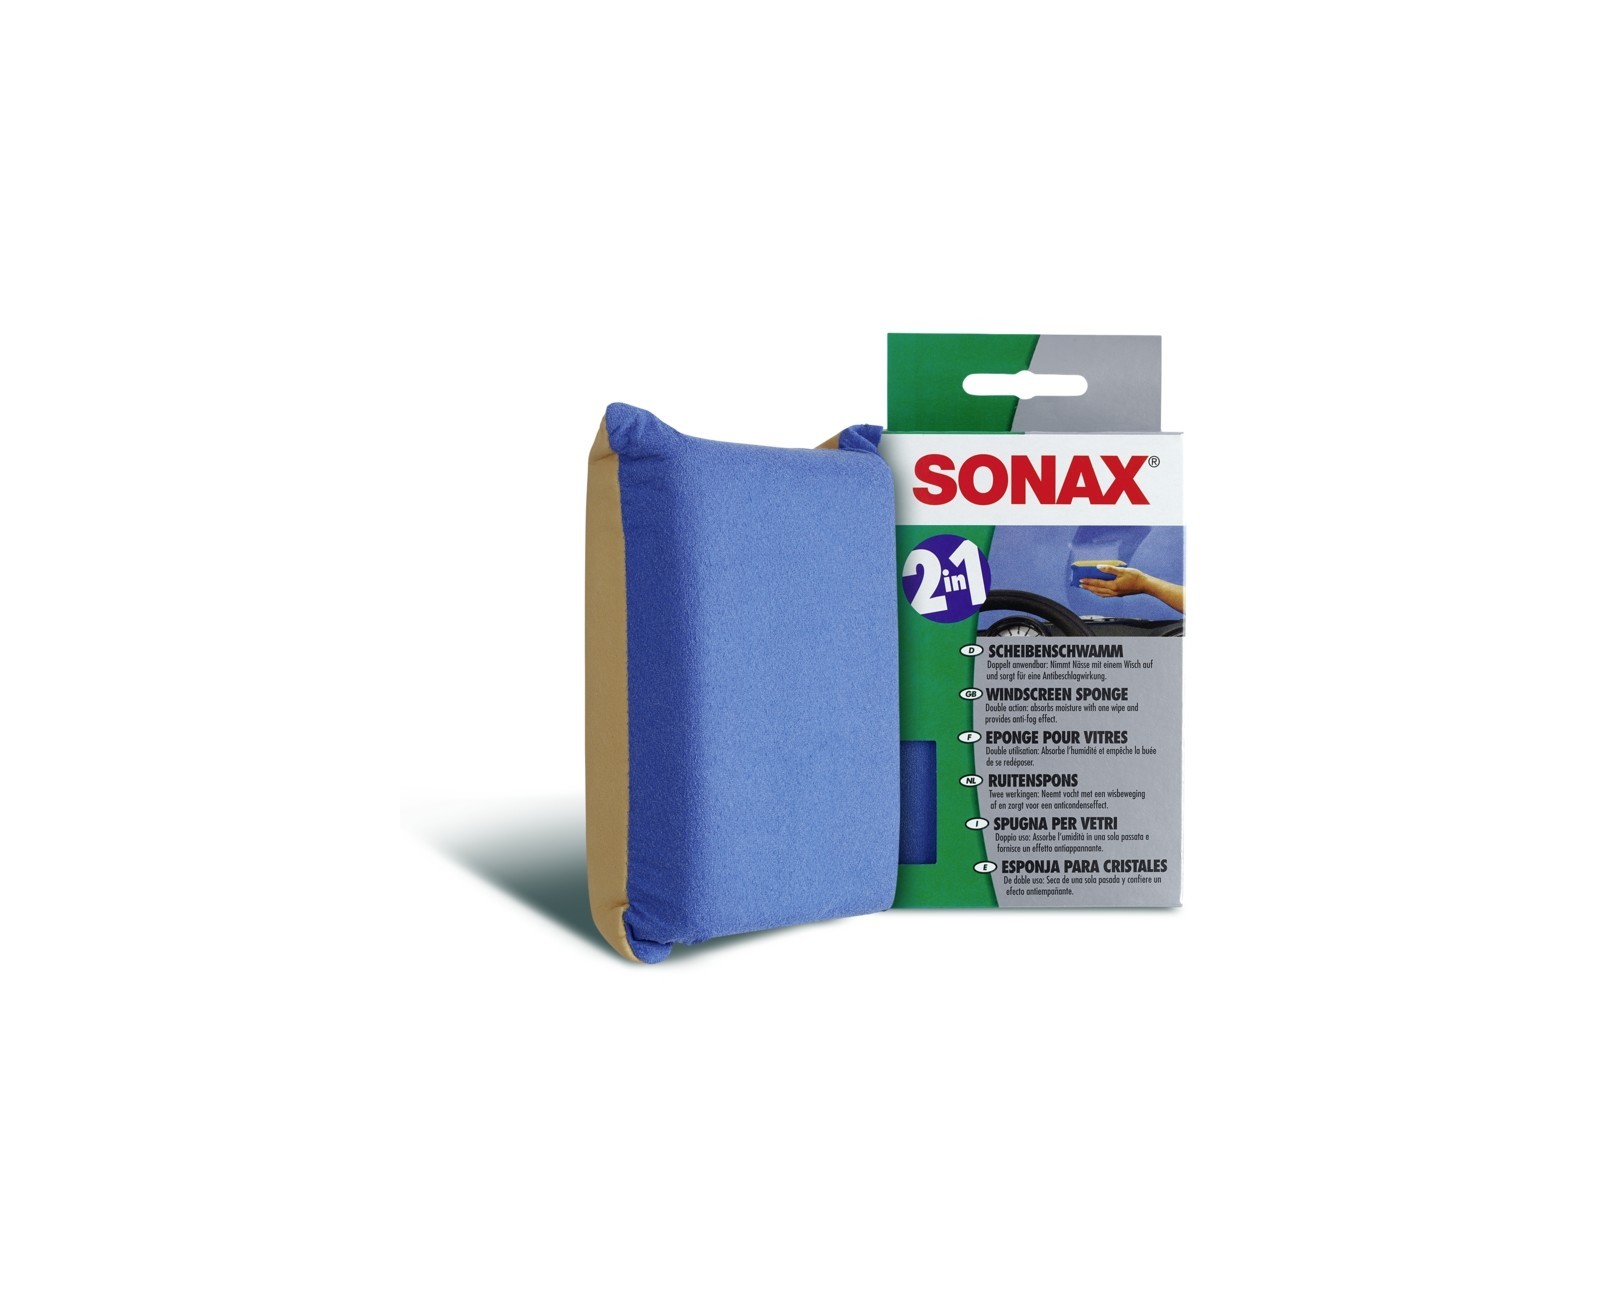 SONAX ScheibenSchwamm 2 in 1 - sorgt für Antibeschlagwirkung